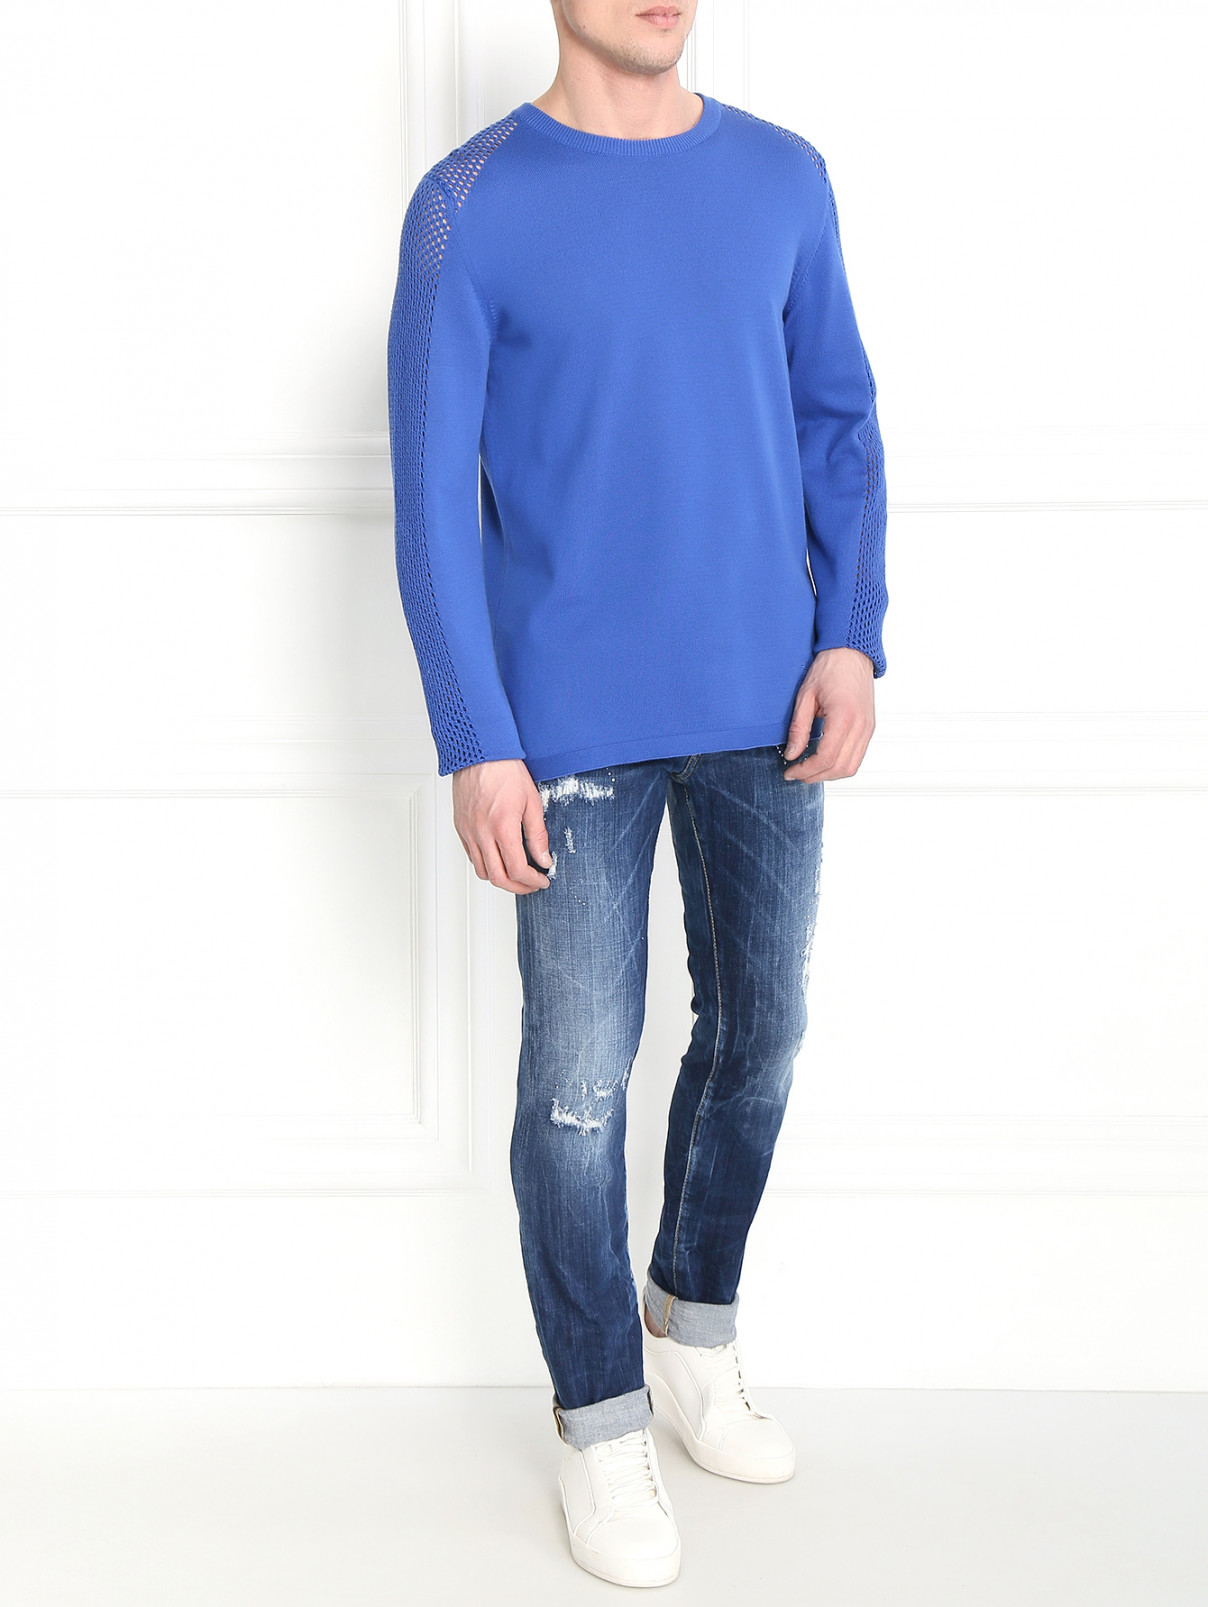 Джемпер из хлопка с перфорированными рукавами Emporio Armani  –  Модель Общий вид  – Цвет:  Синий